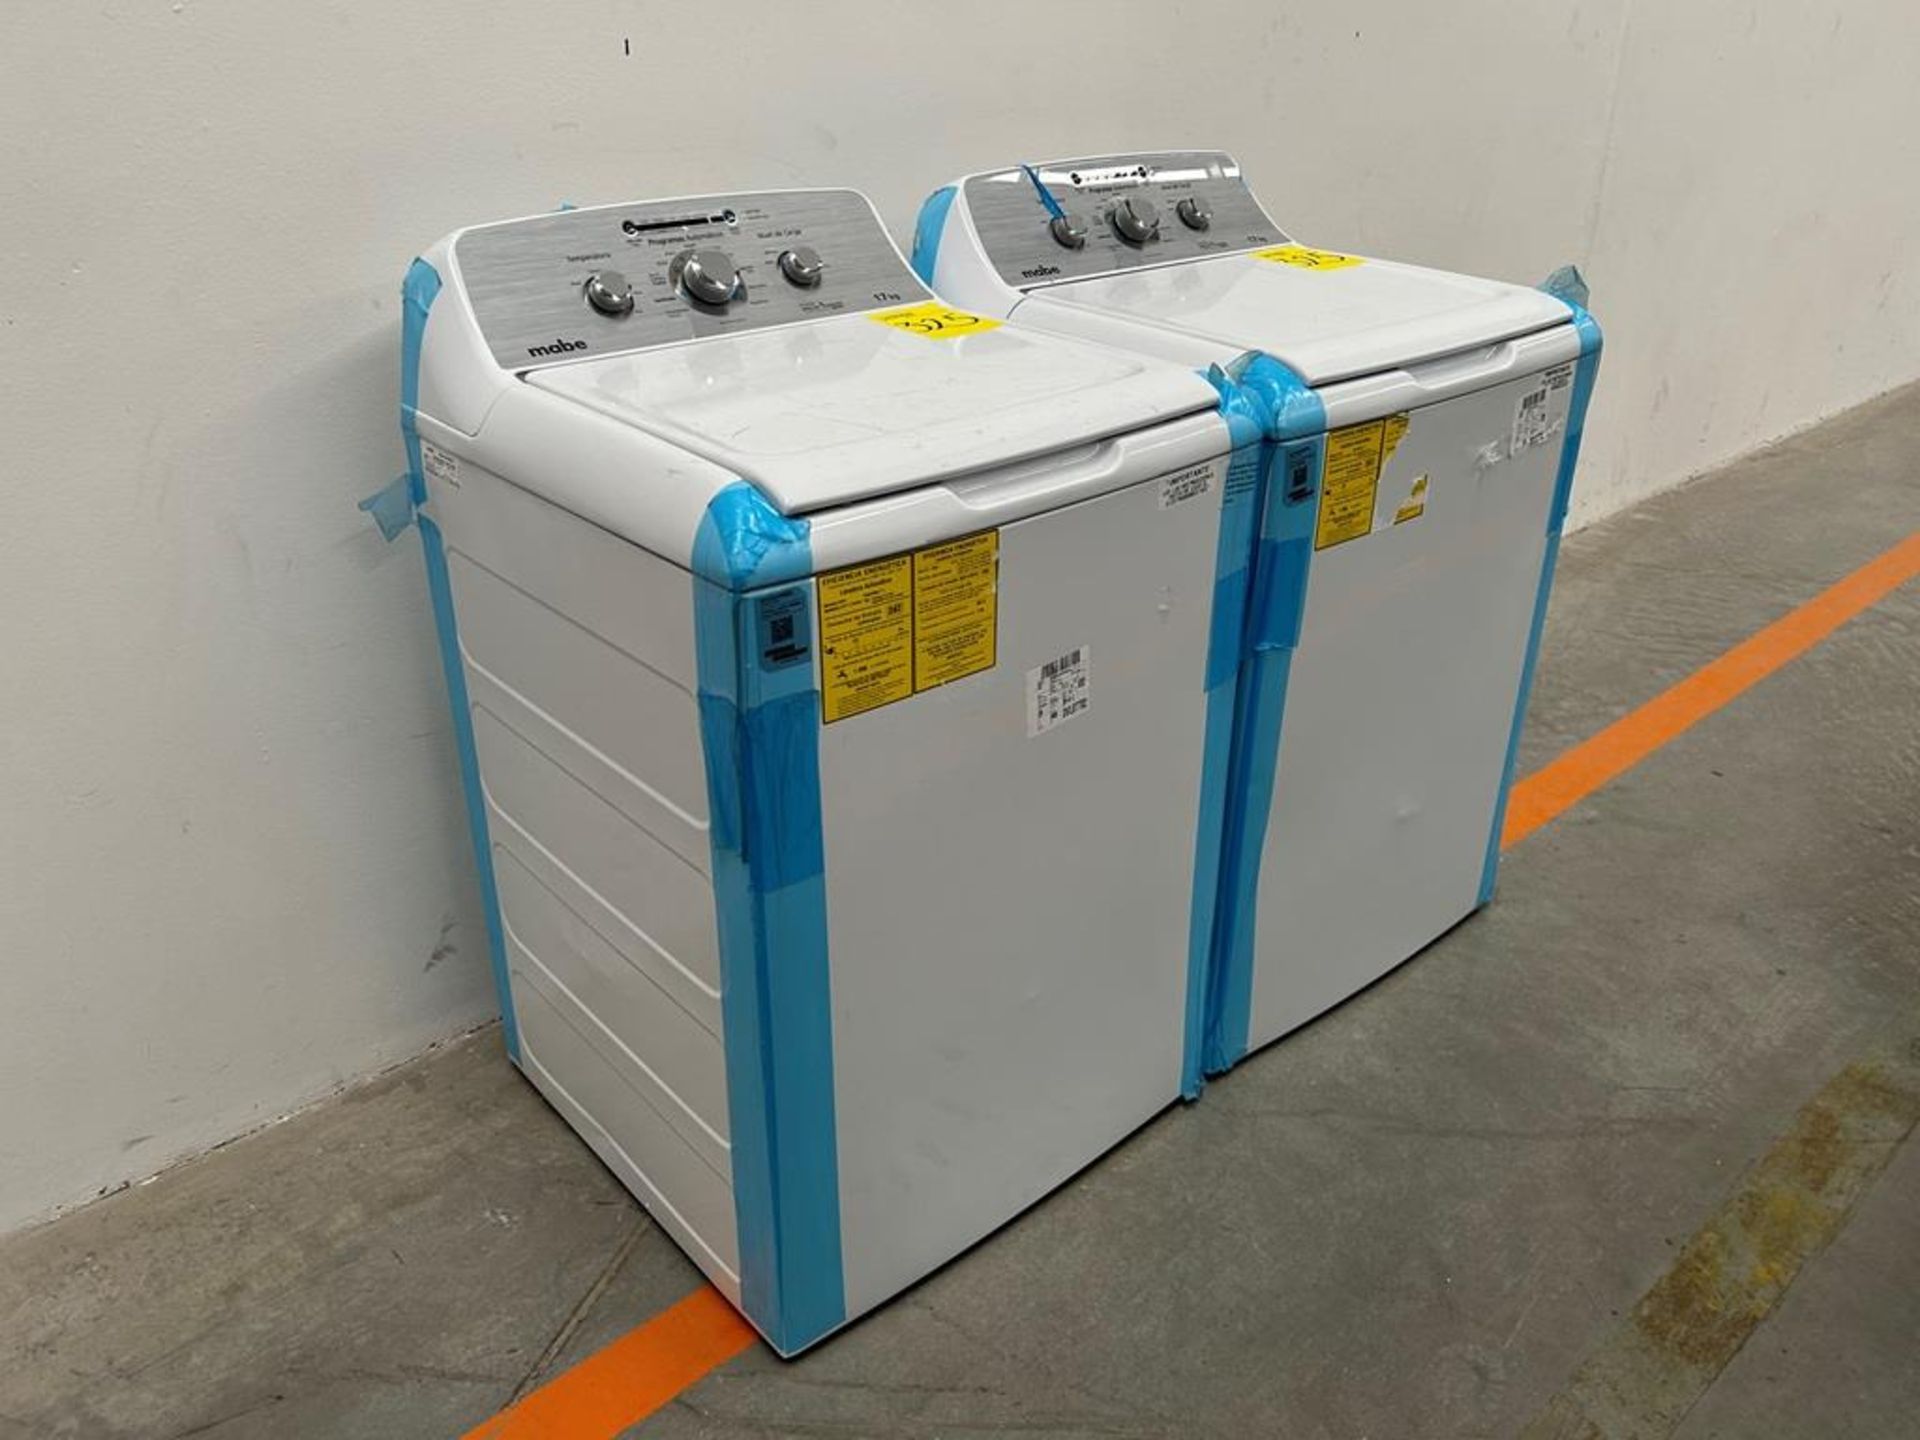 Lote de 2 lavadoras contiene: 1 Lavadora de 17 KG Marca MABE, Modelo LMA77113CBAB04, Serie S91210, - Image 3 of 10